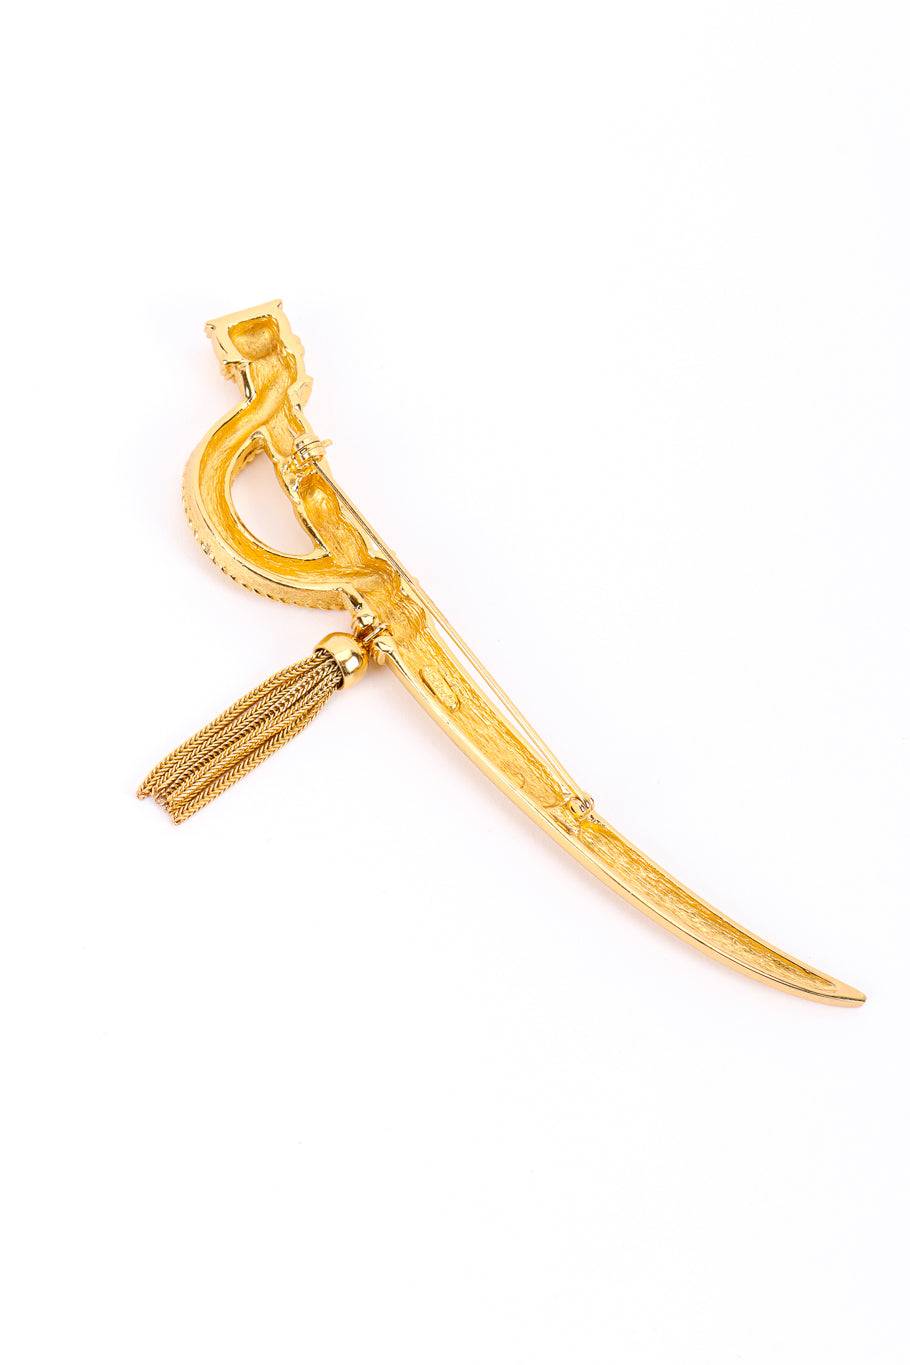 Vintage Christian Dior Saber Sword Brooch back @recessla